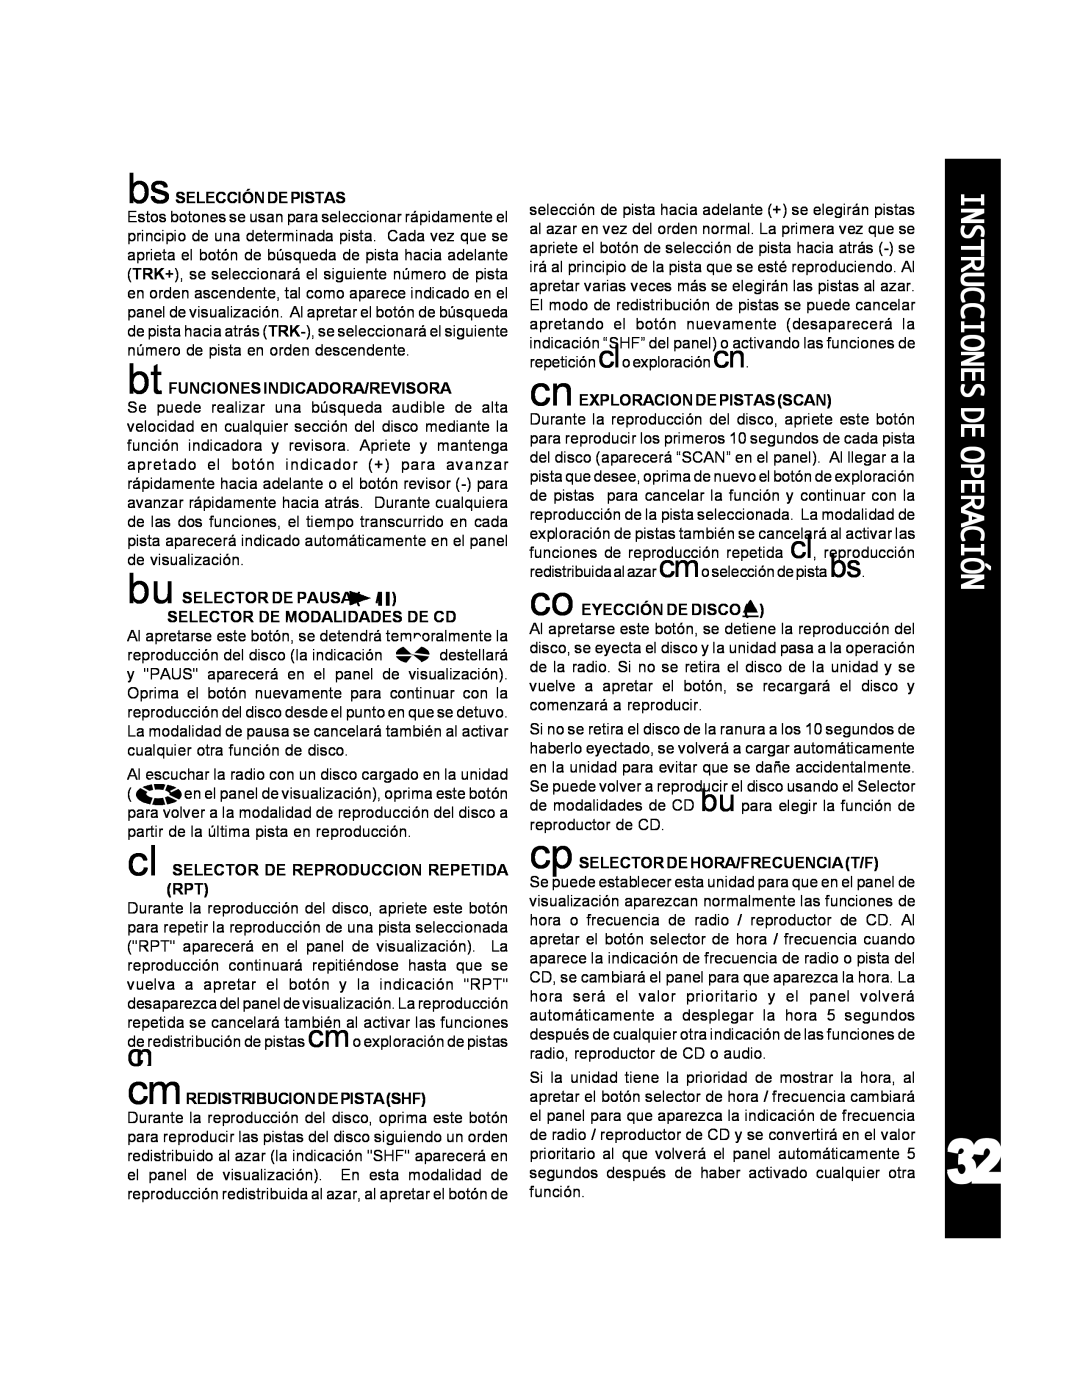 Audiovox ACD-25 manual Instrucciones De Operación 